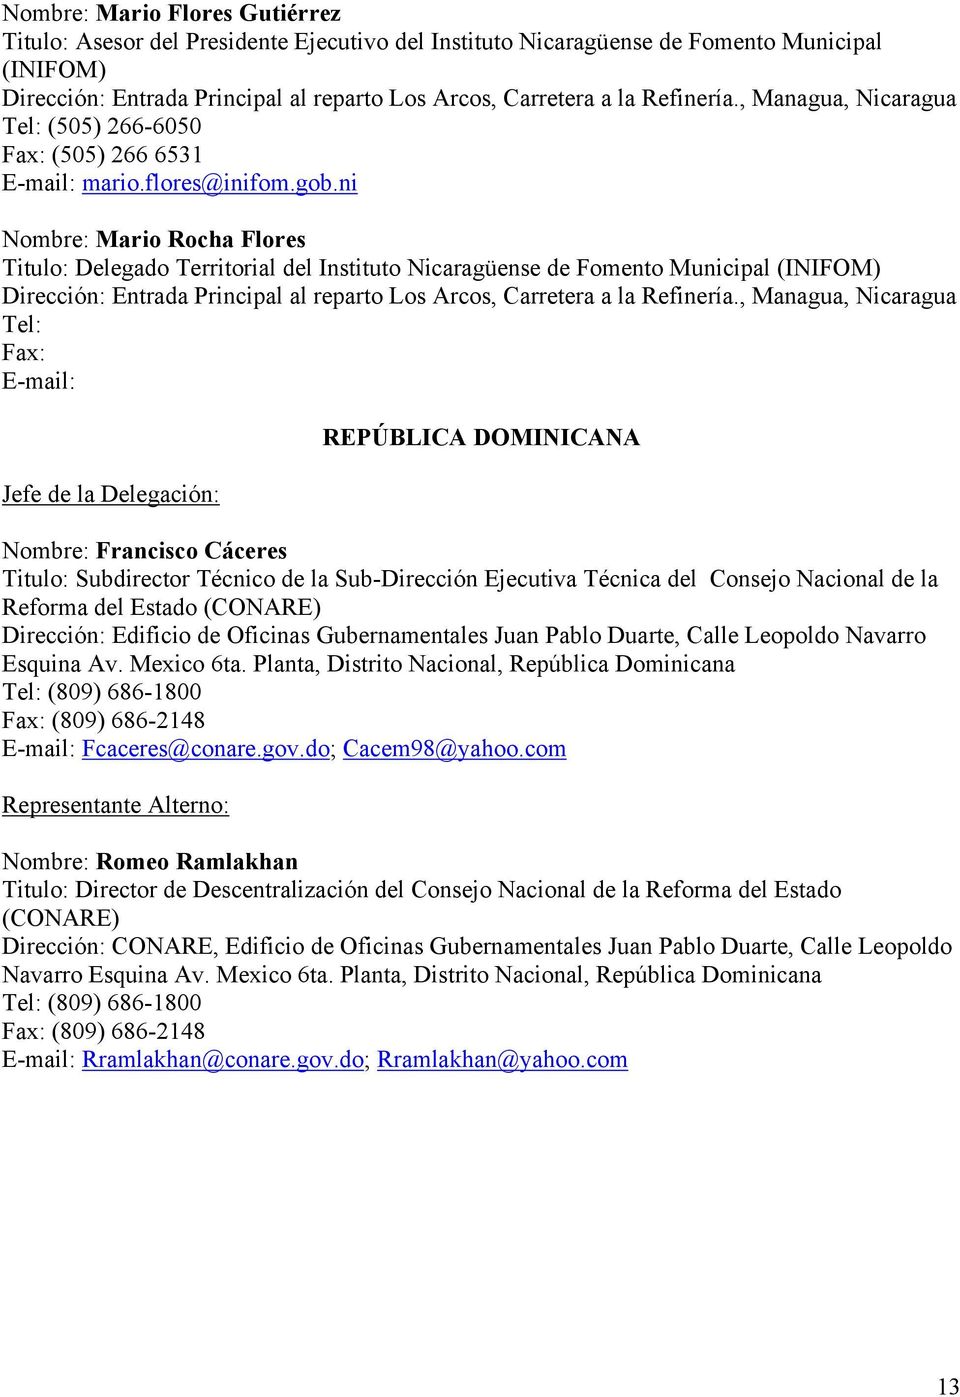 ni Nombre: Mario Rocha Flores Titulo: Delegado Territorial del Instituto Nicaragüense de Fomento Municipal (INIFOM) Entrada Principal al reparto Los Arcos, Carretera a la Refinería.